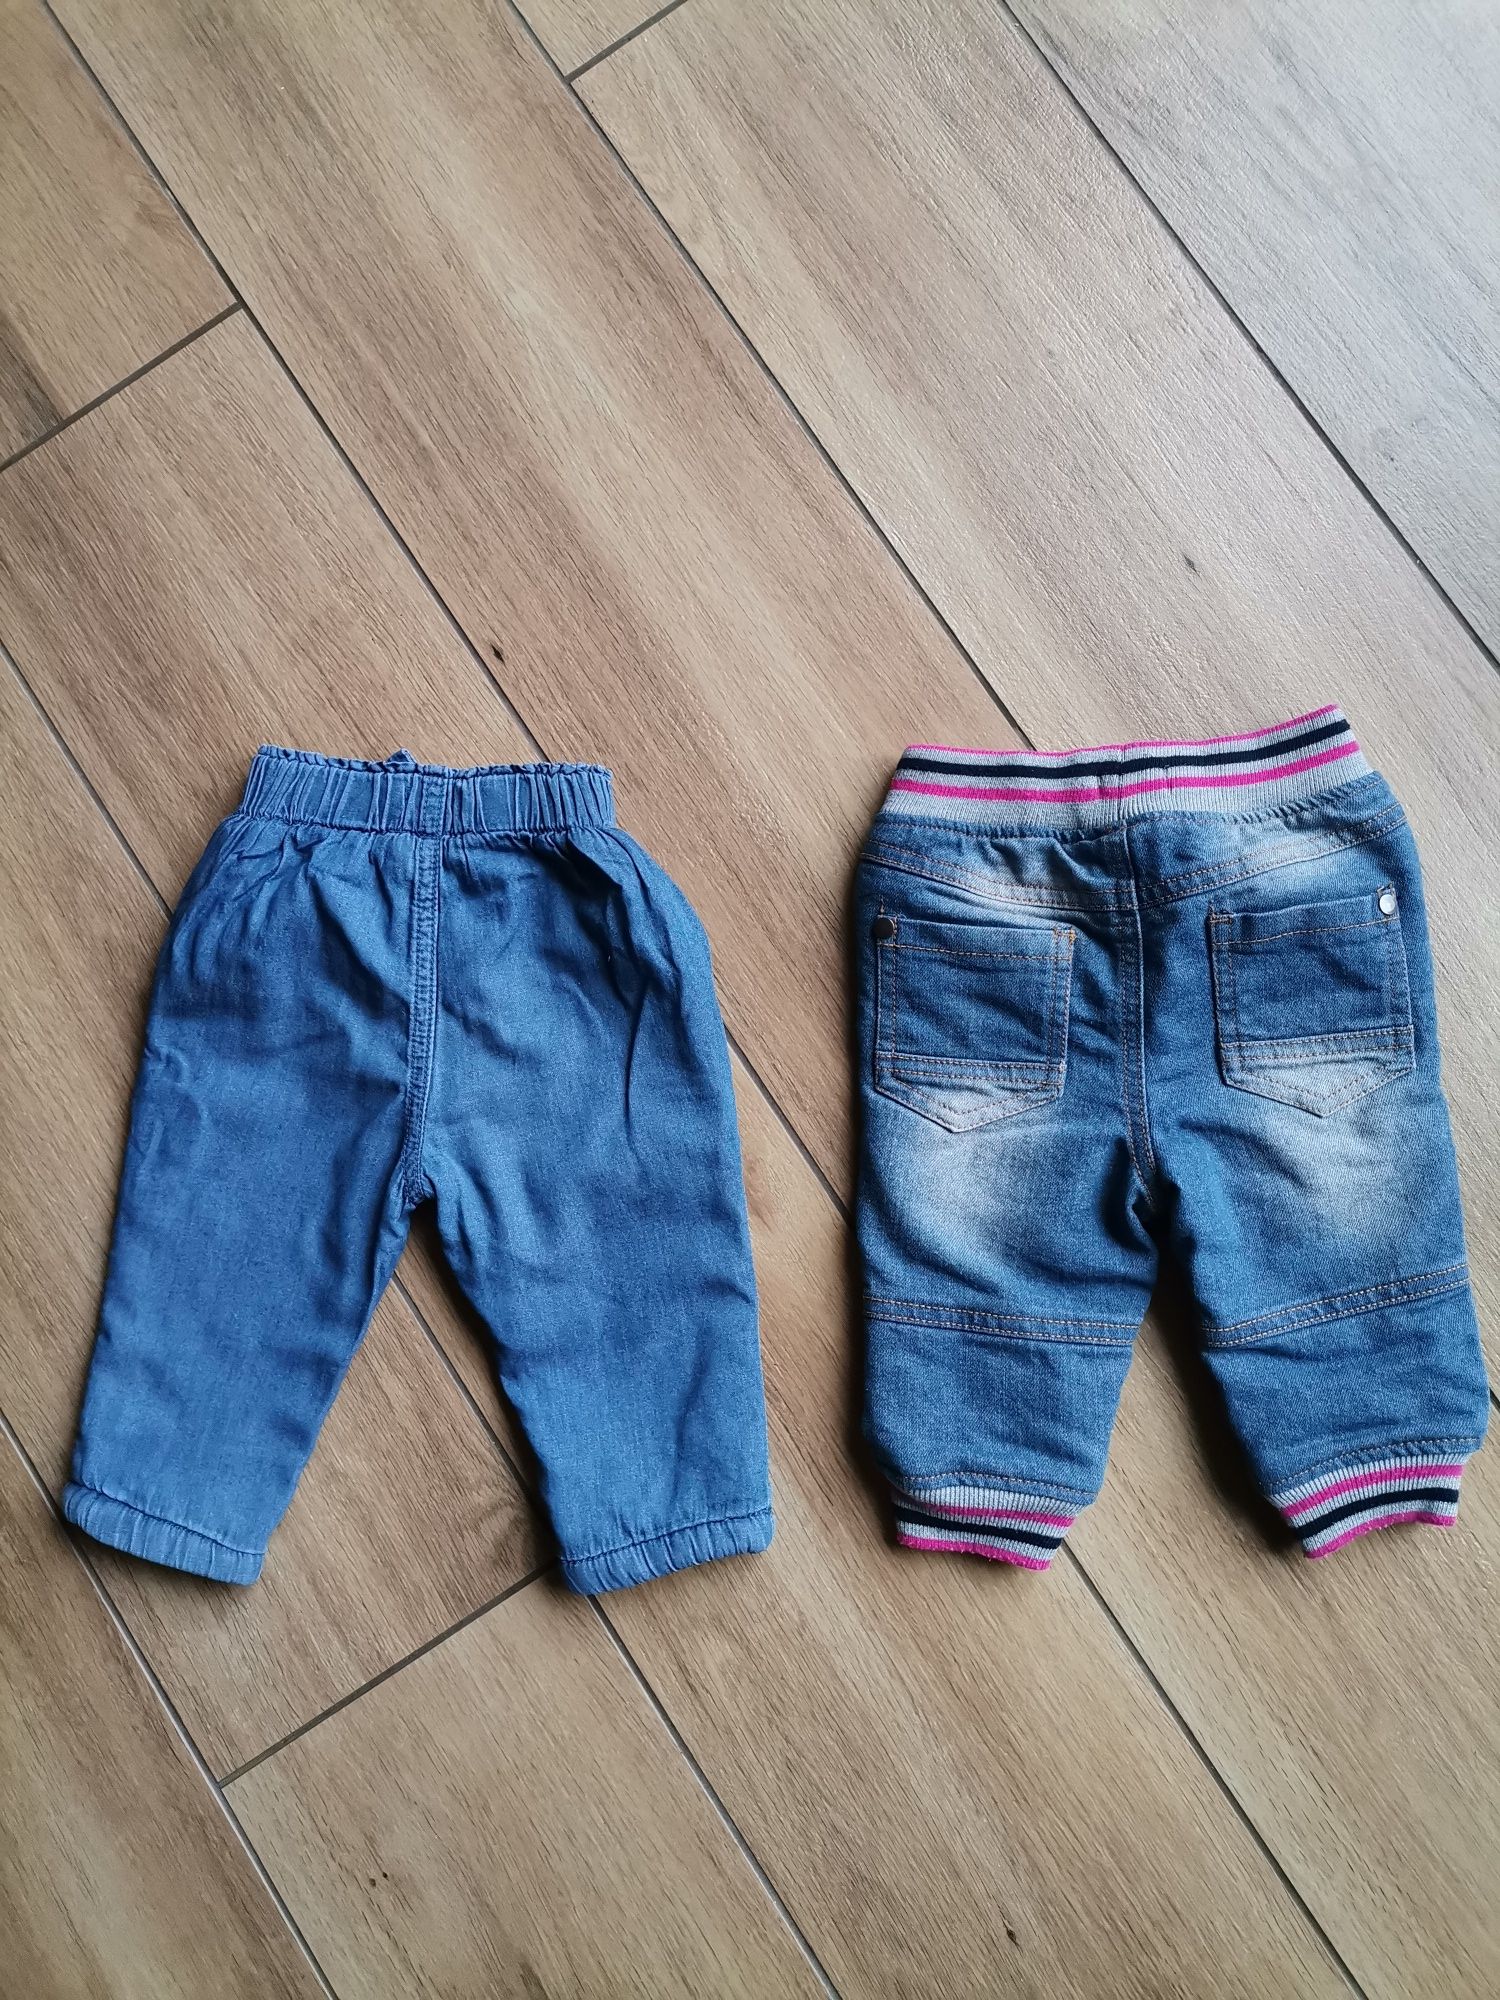 2 pary jeansów spodni ocieplanych 74